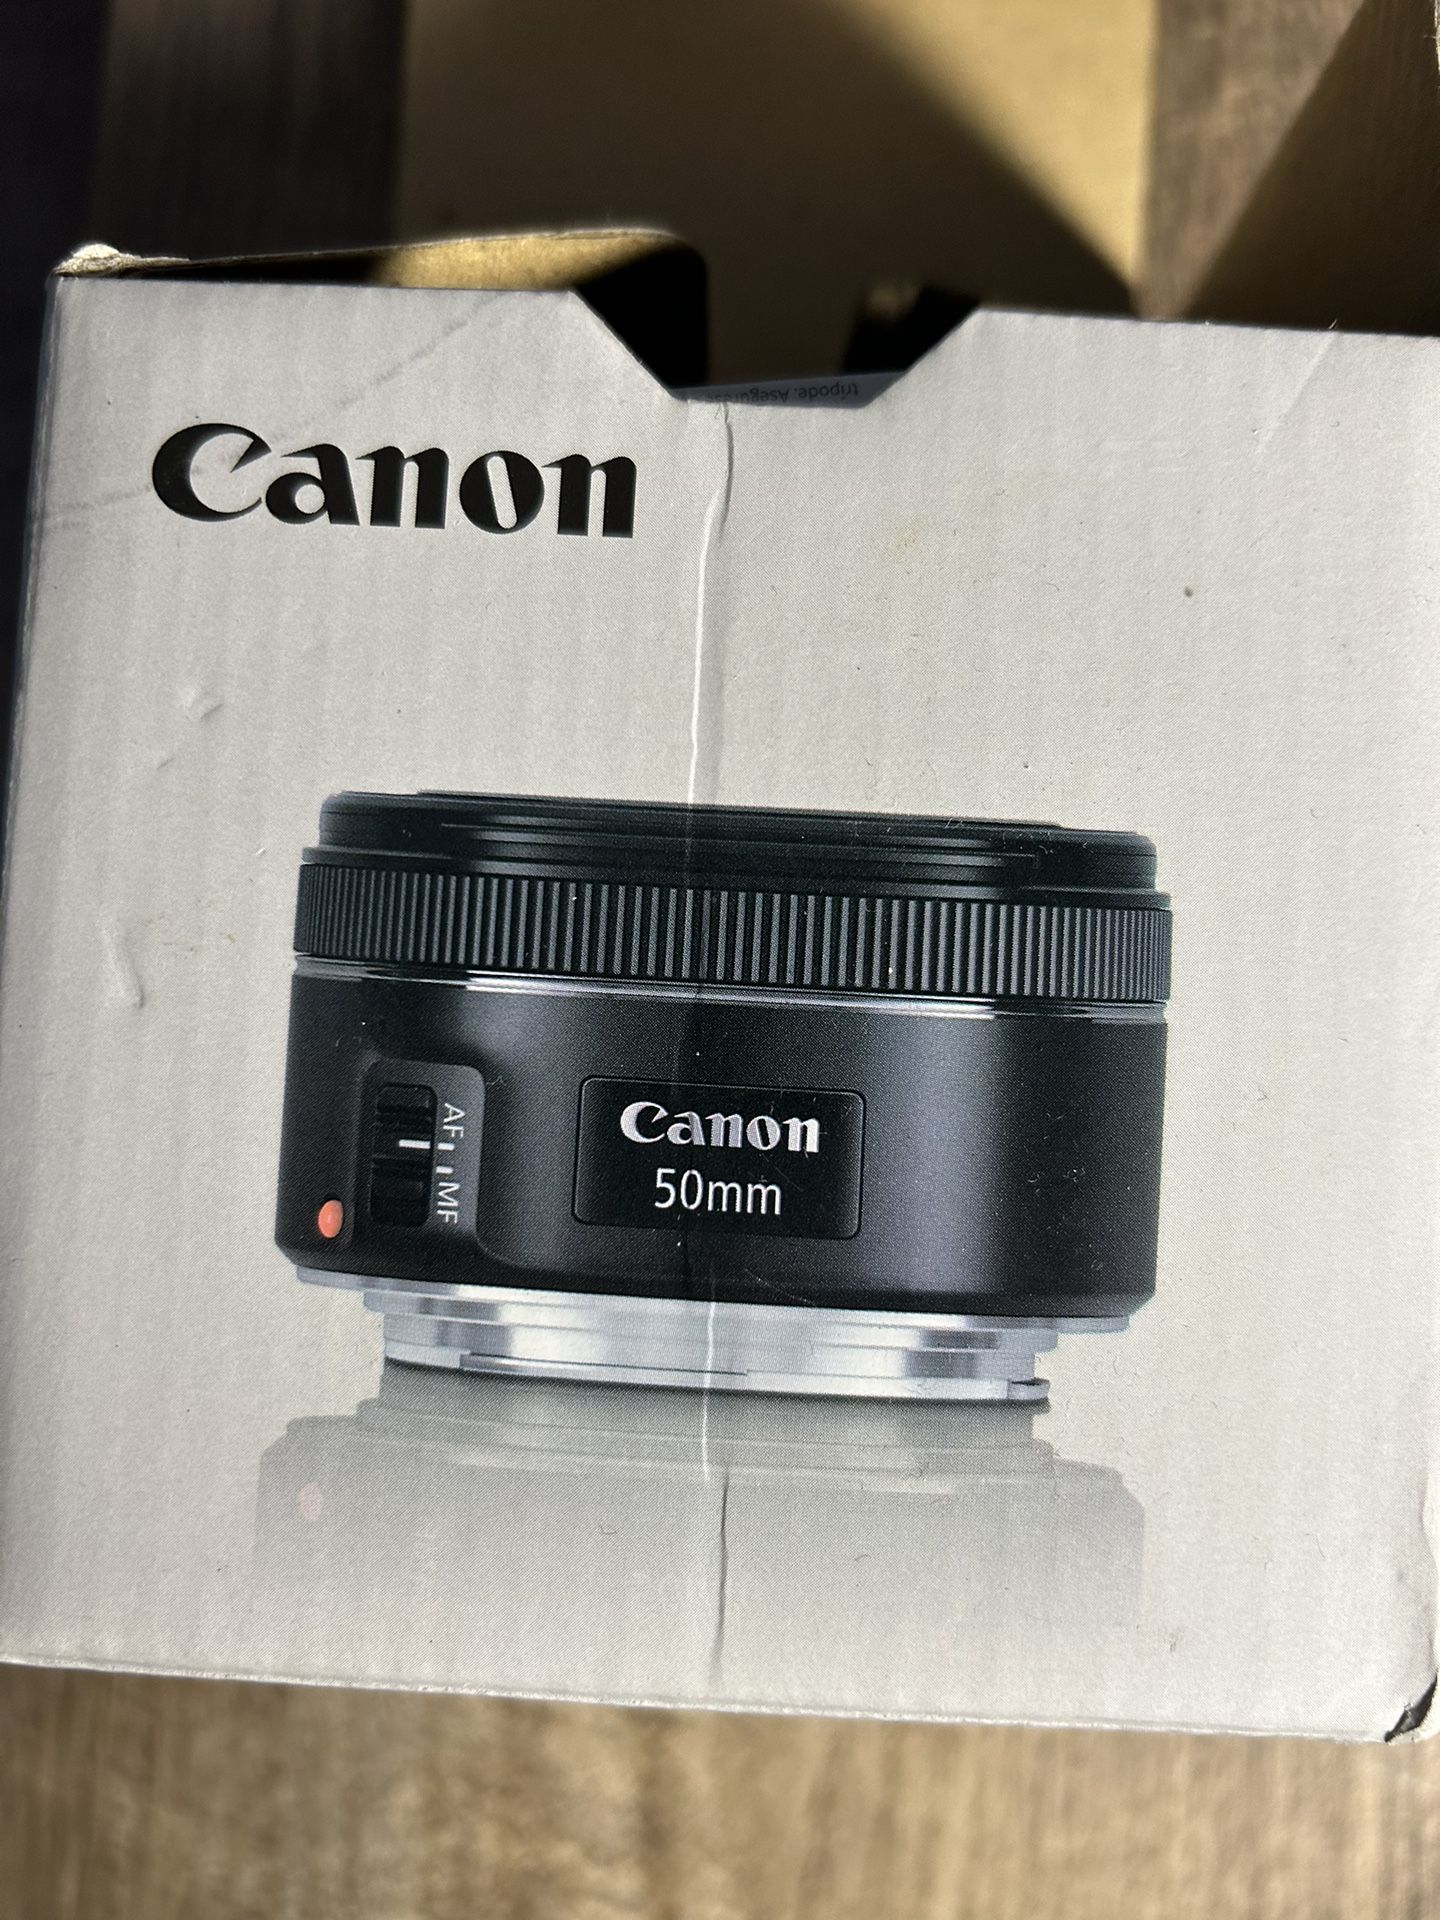 canon ef 50mm f/1.8 stm lens